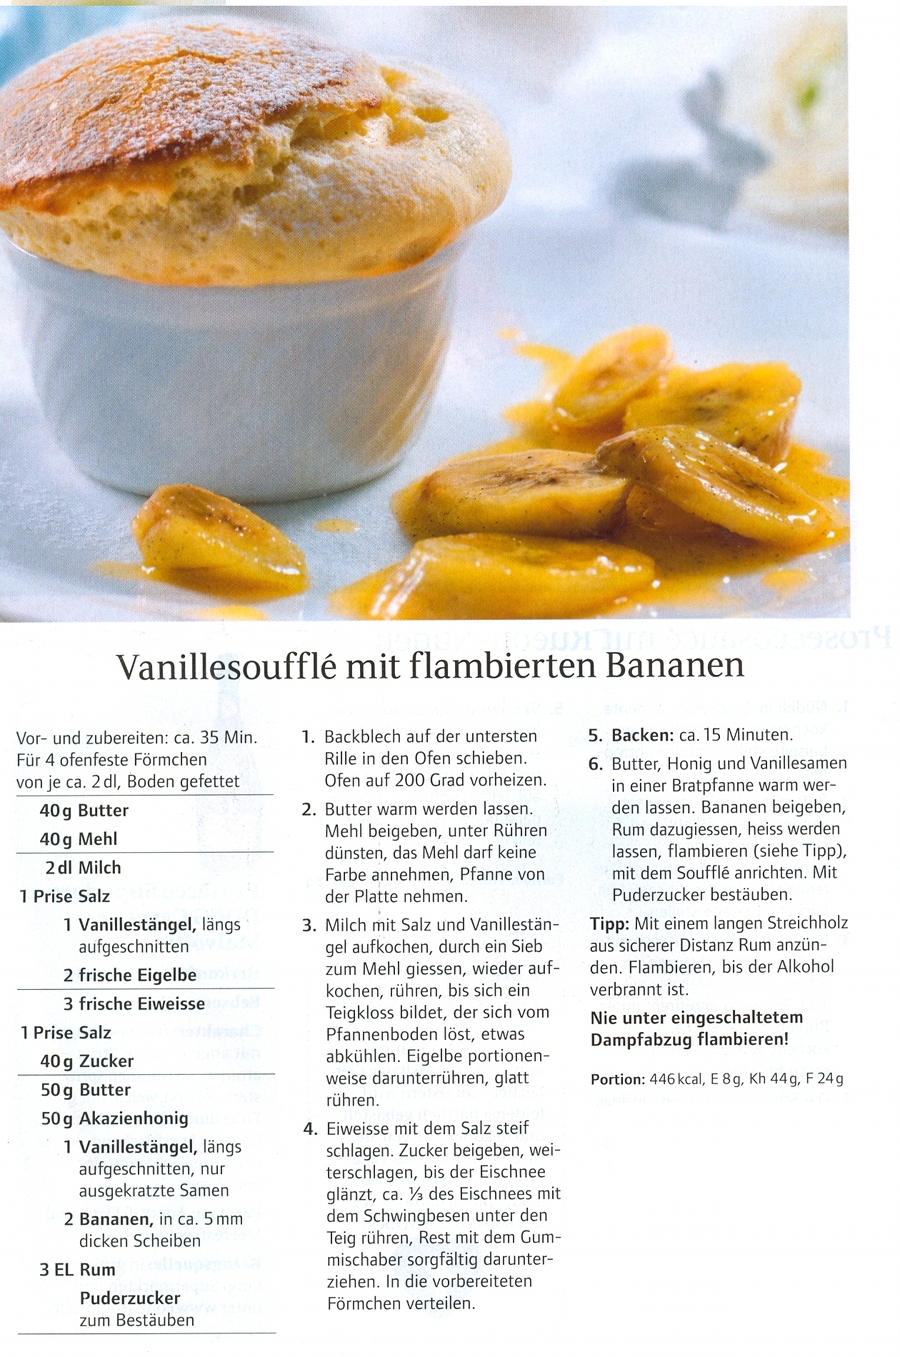 Vanille Soufflee mit flambierten Bananen